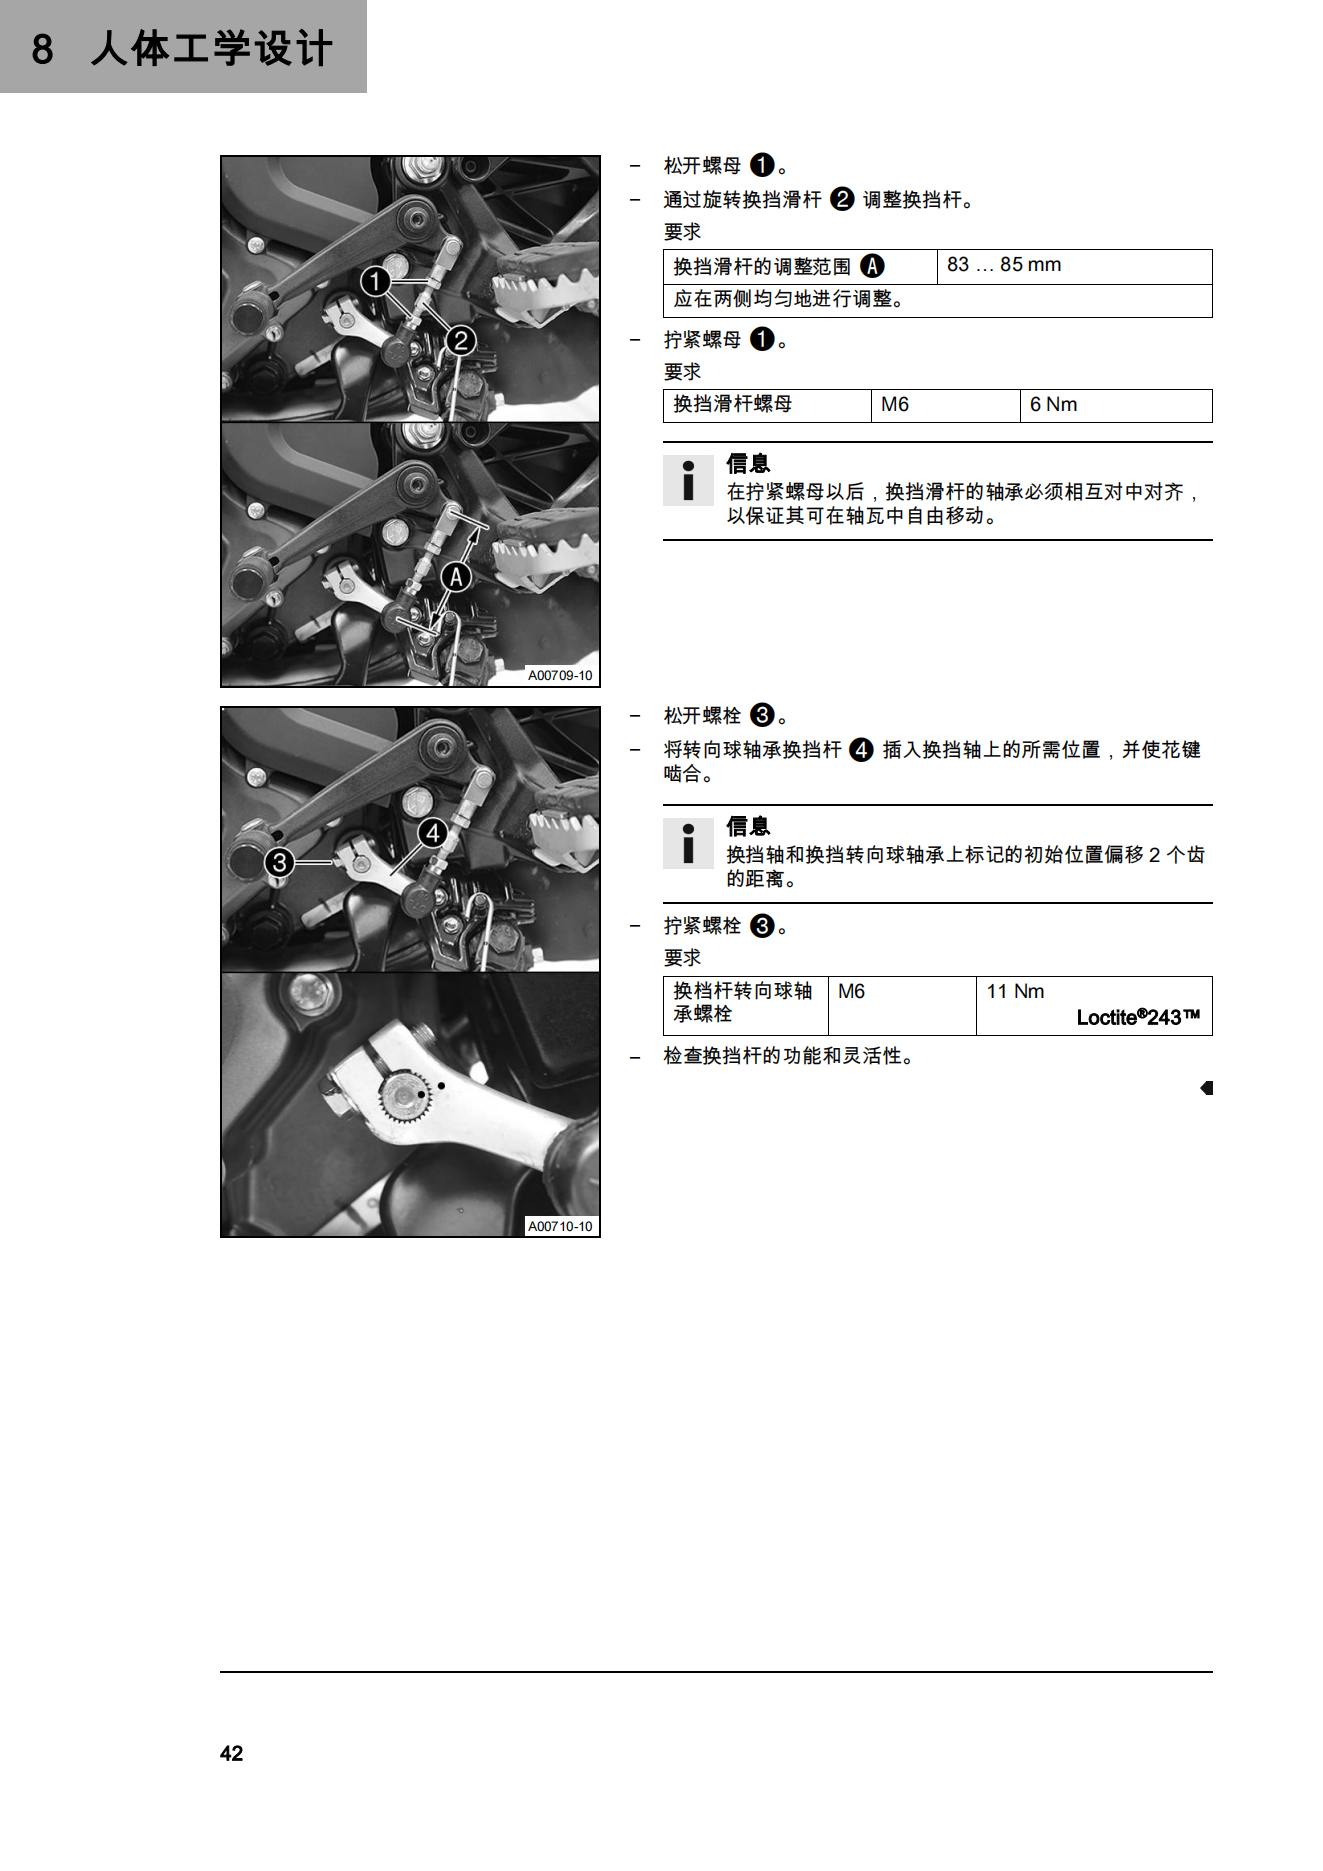 简体中文2022年390adv用户手册390 ADV ENTURE插图2